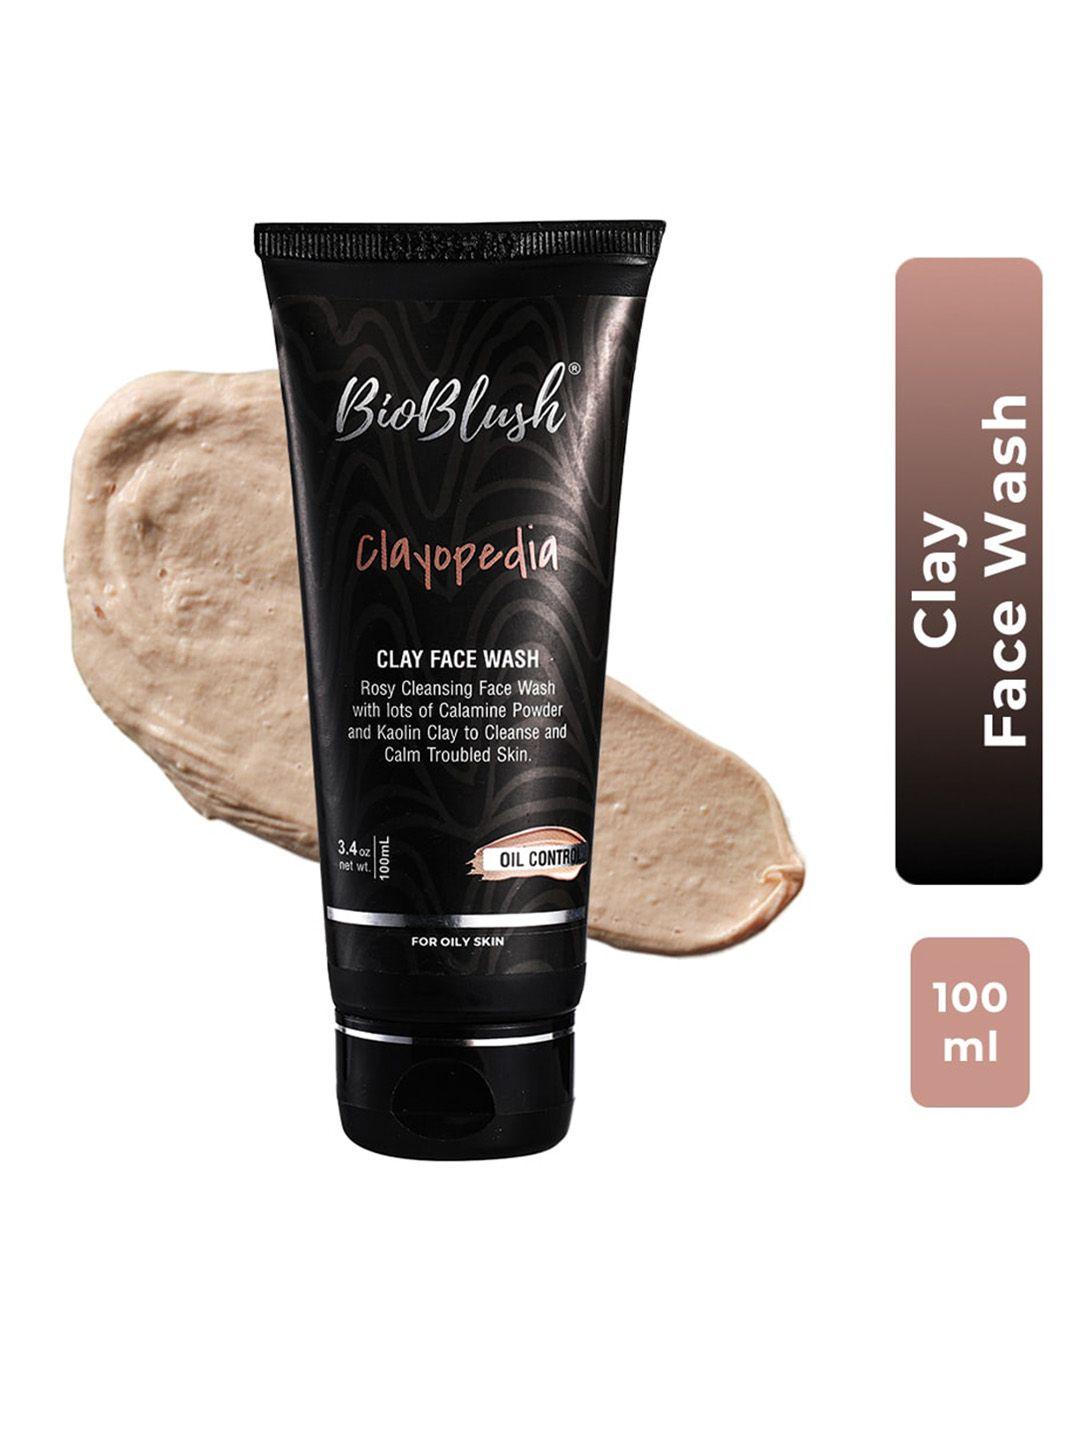 bioblush clayopedia clay face wash 100 ml